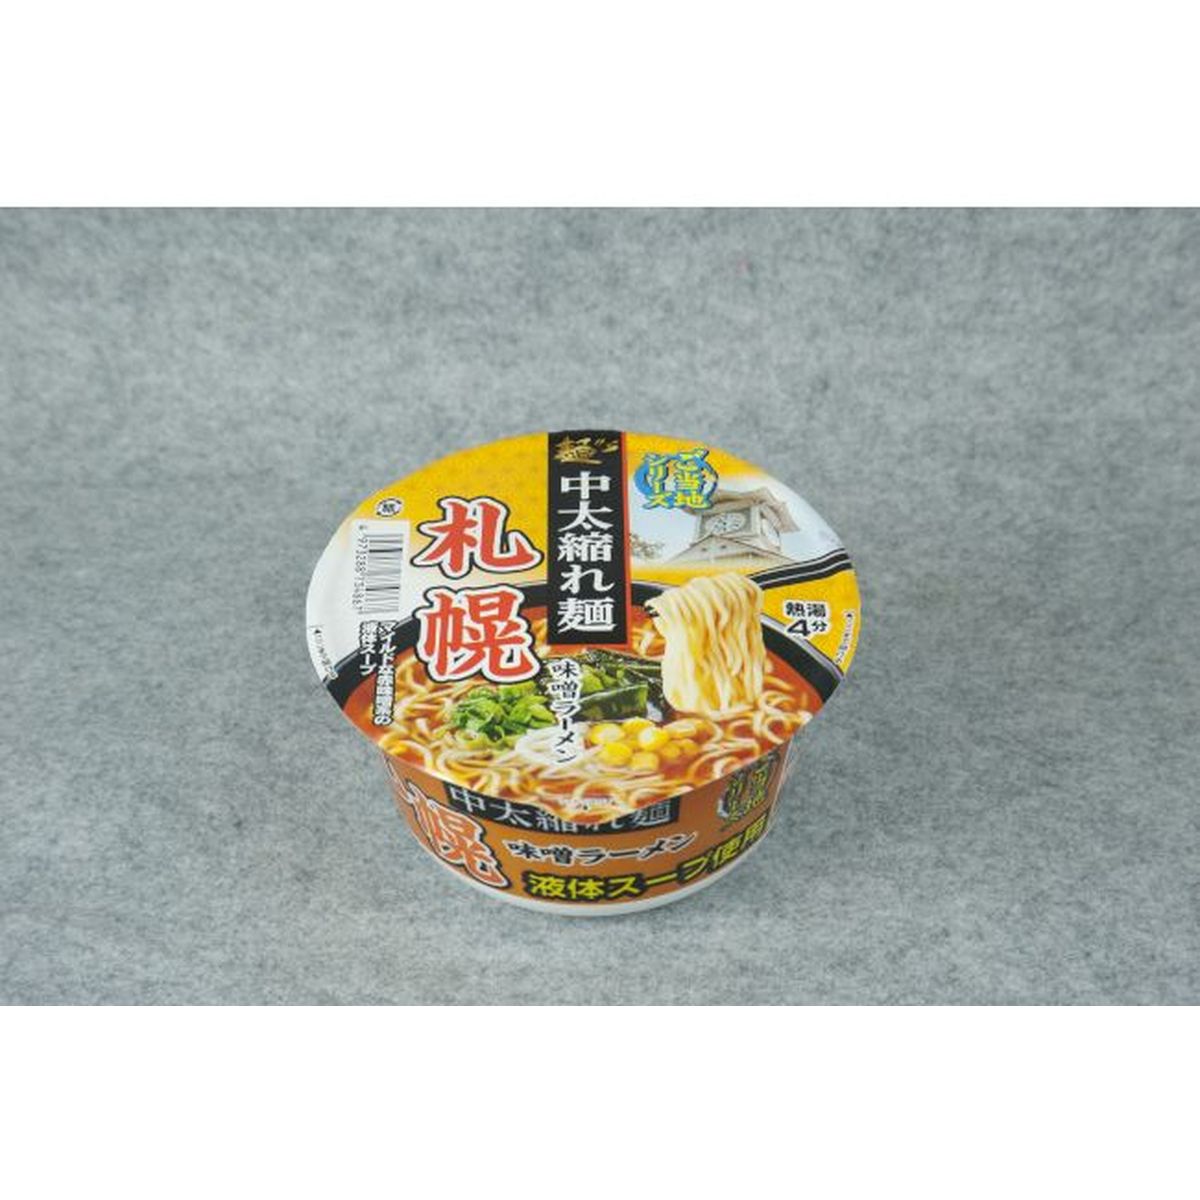 【12個入リ】スナオシ 札幌味噌ラーメン カップ 103g